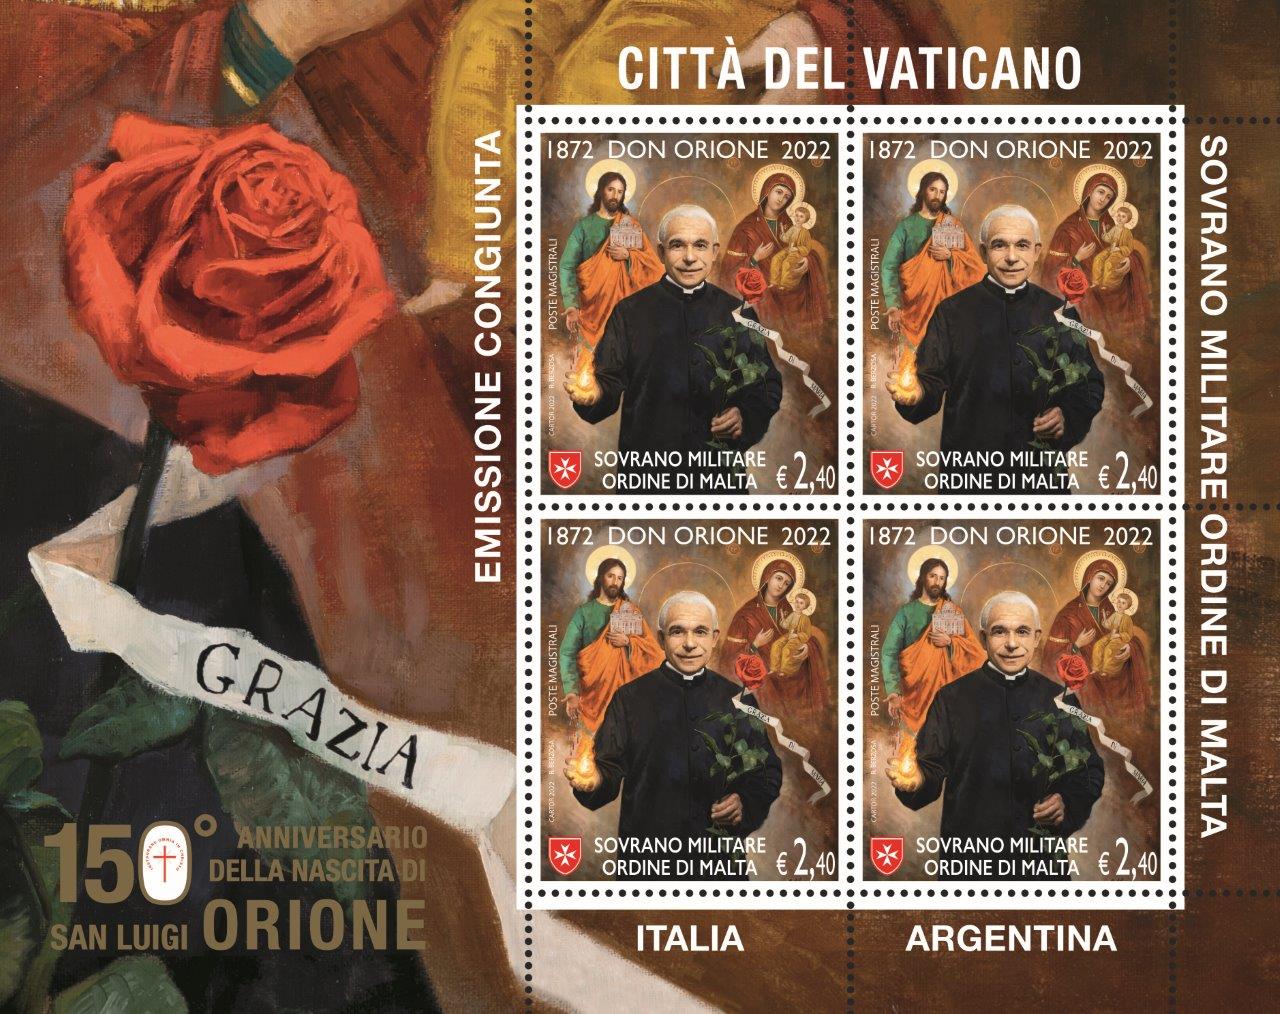 L’emissione postale dedicata a San Luigi Orione, nel centocinquantenario della nascita